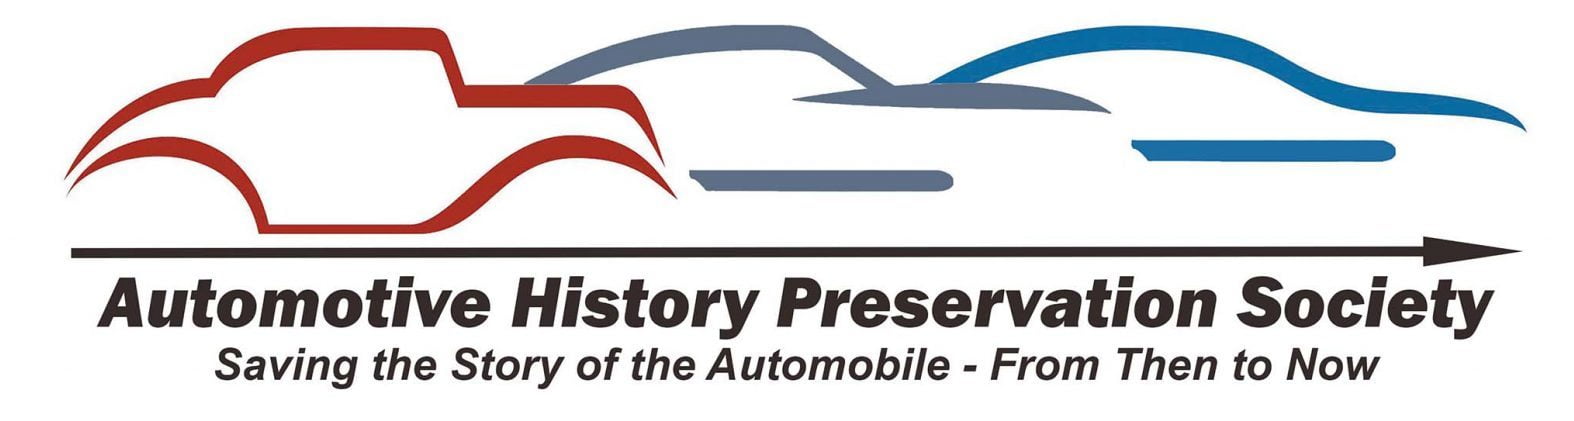 AHPS New Car Logo Words